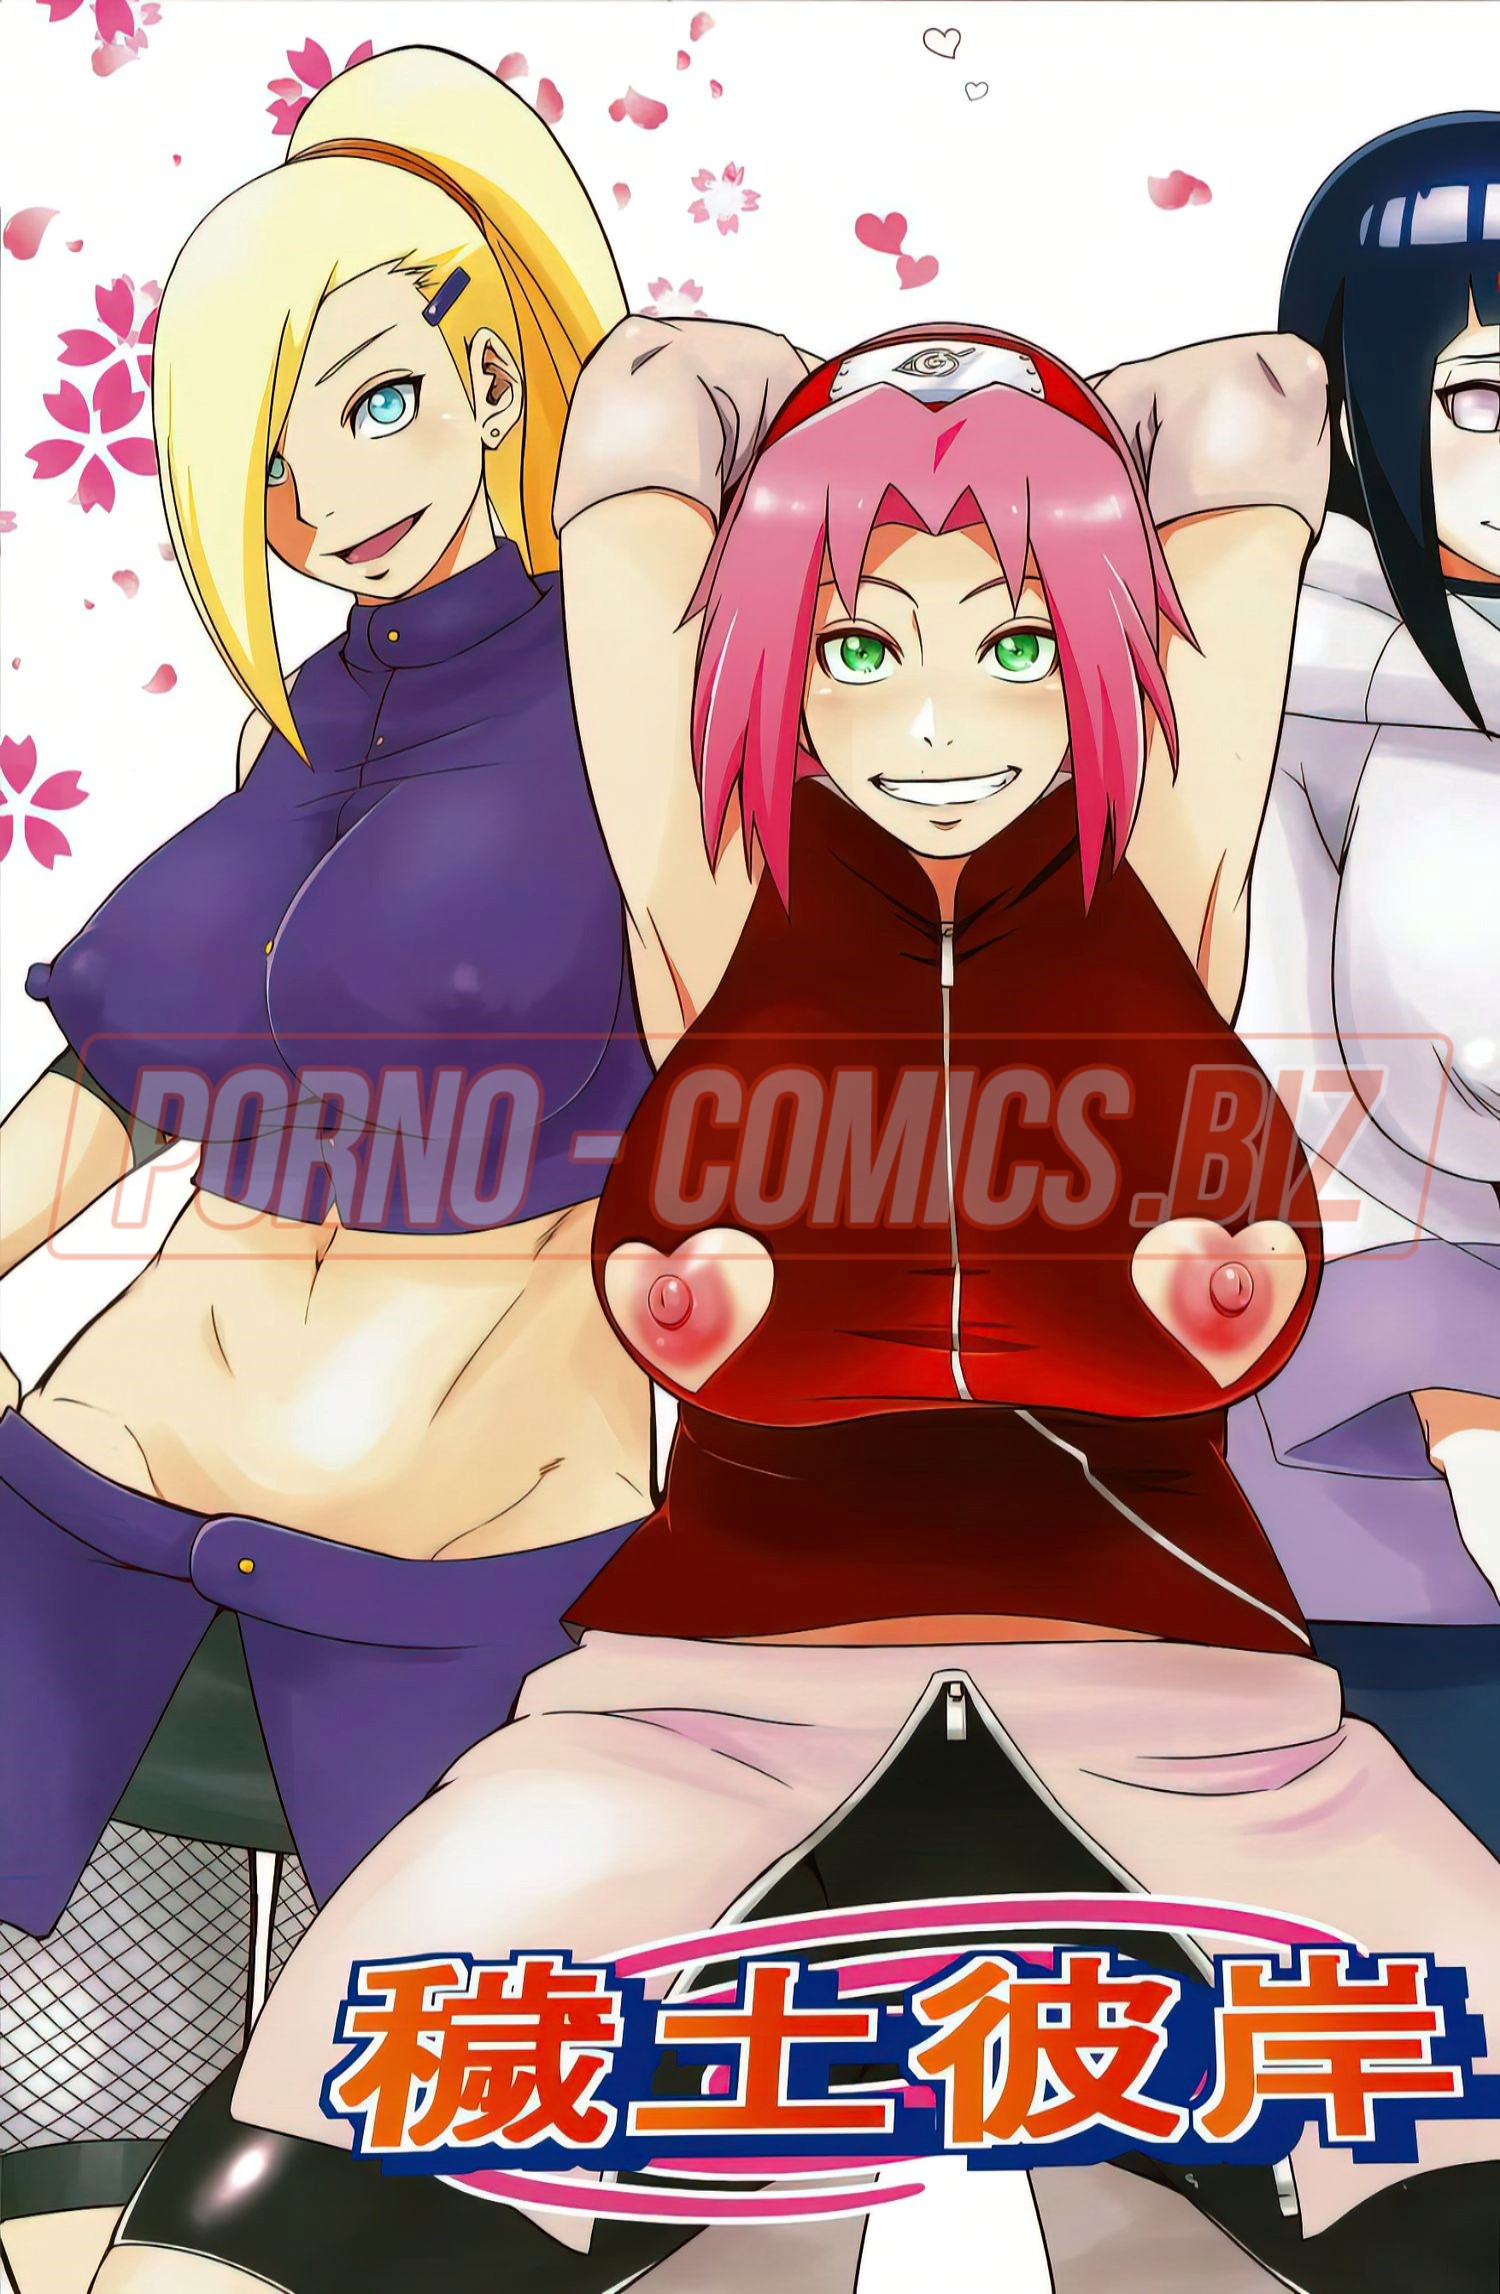 Групповой секс красивых аниме телочек с ненасытным Наруто - хентай порно комикс